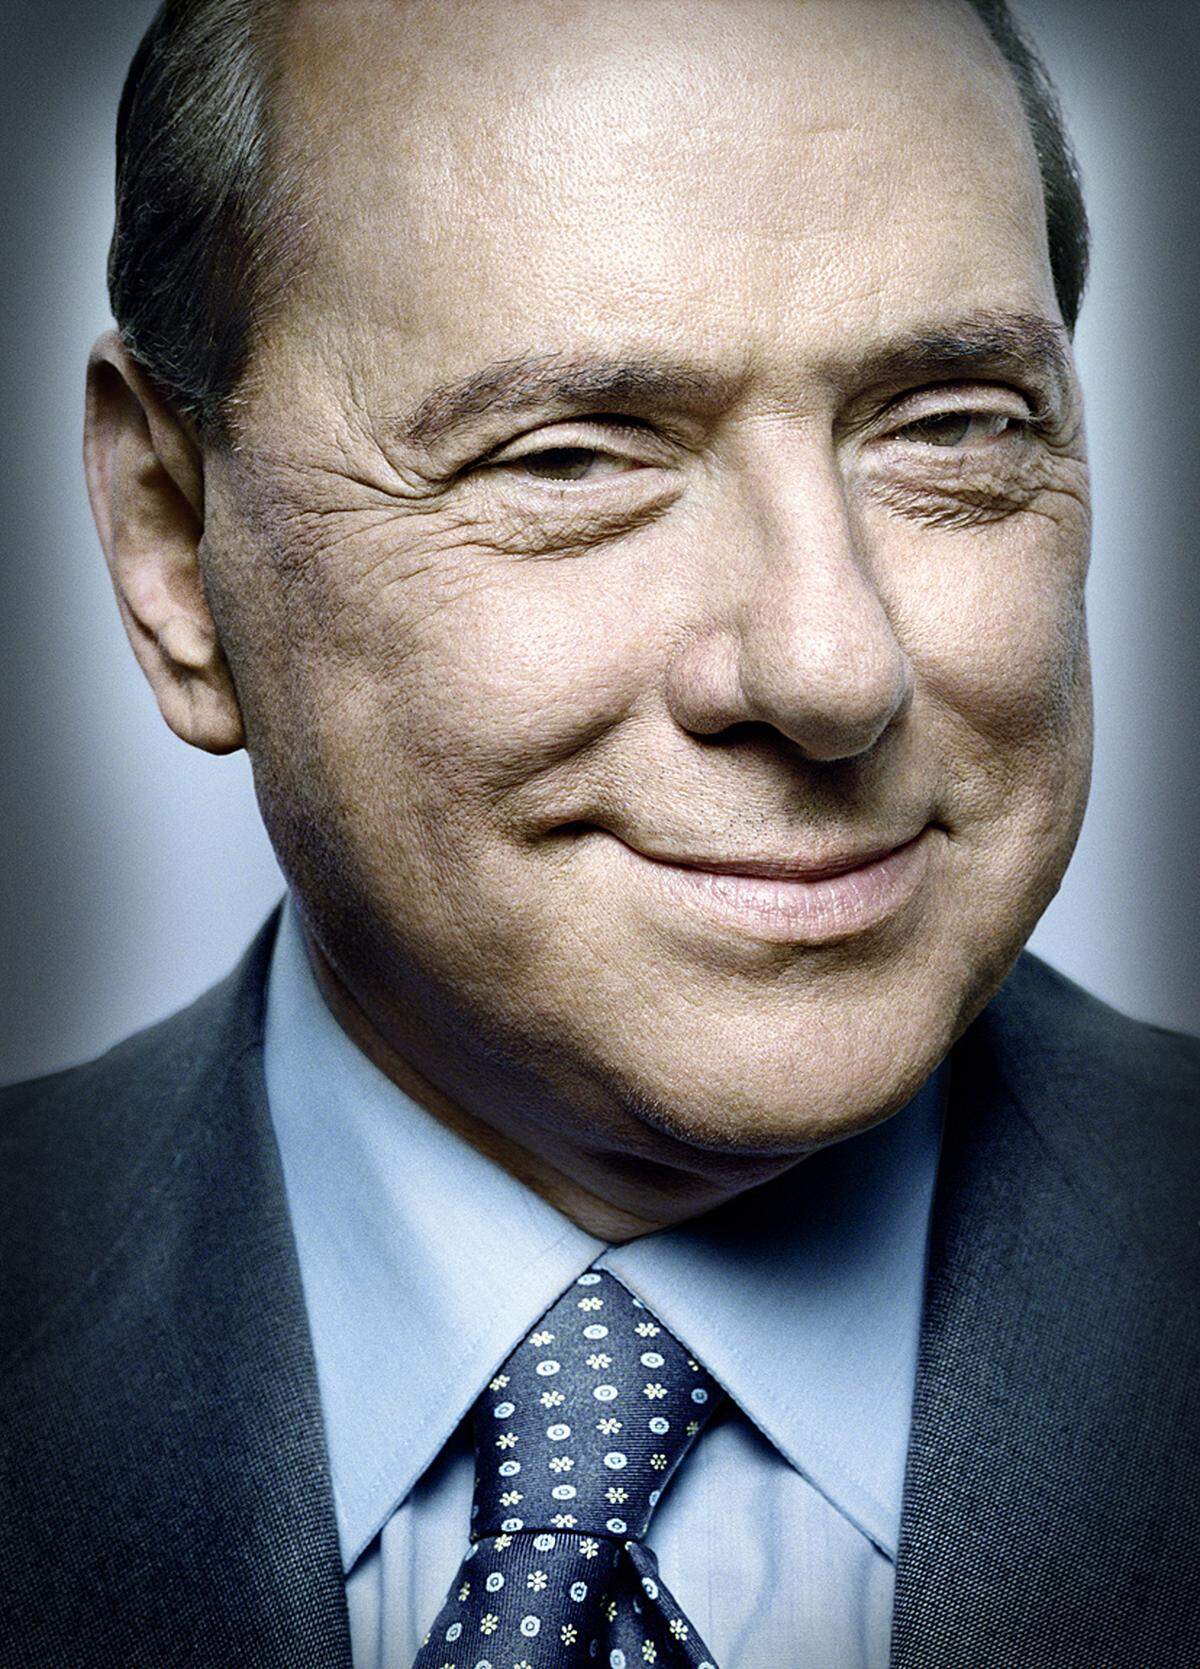 Die Galerie Westlicht zeigt die Bilder vom 21. Februar bis zum 22. April. Im Bild: Silvio Berlusconi, Ehemaliger Ministerpräsident Italiens, im Amt von Mai 2008 - November 2011. (c) Platon